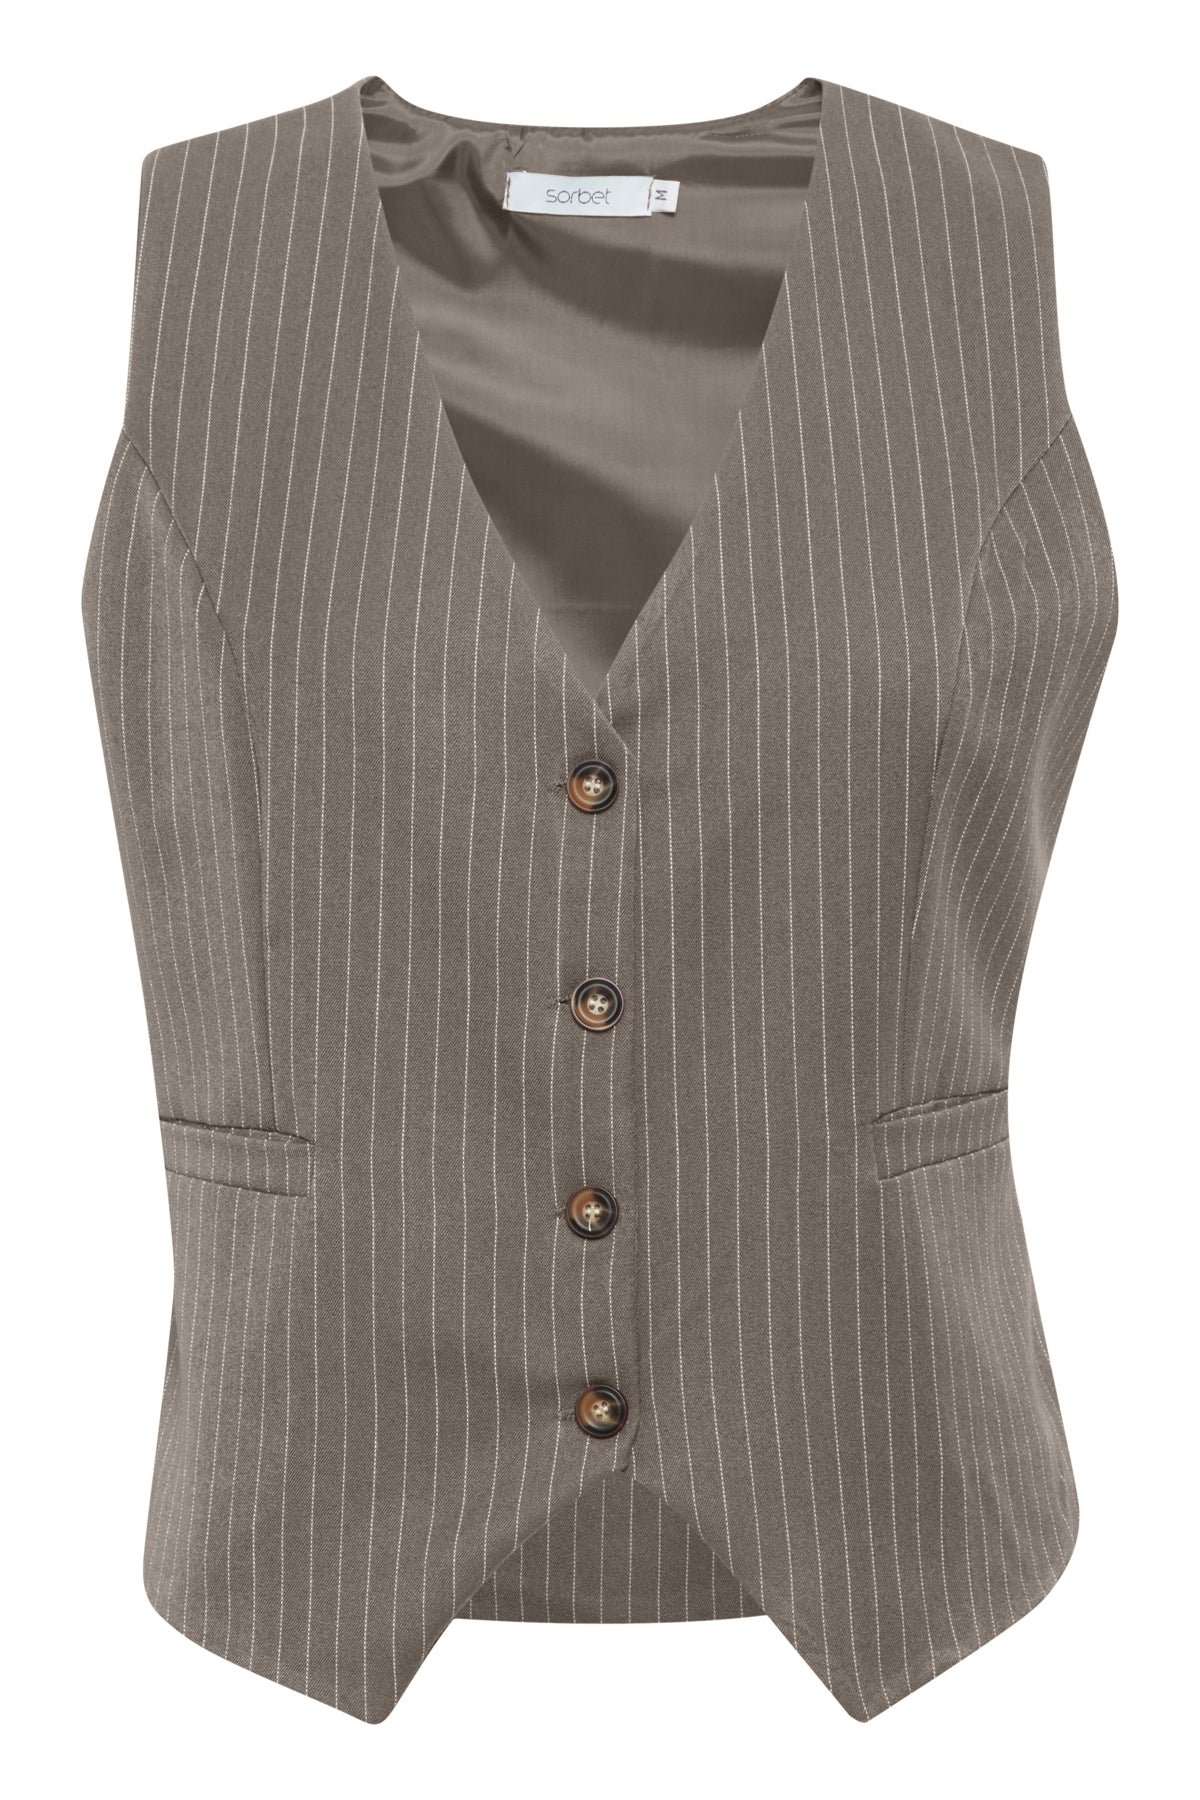 Bøjle 70 - Sorbet SBDiego Waistcoat, Grey Melange